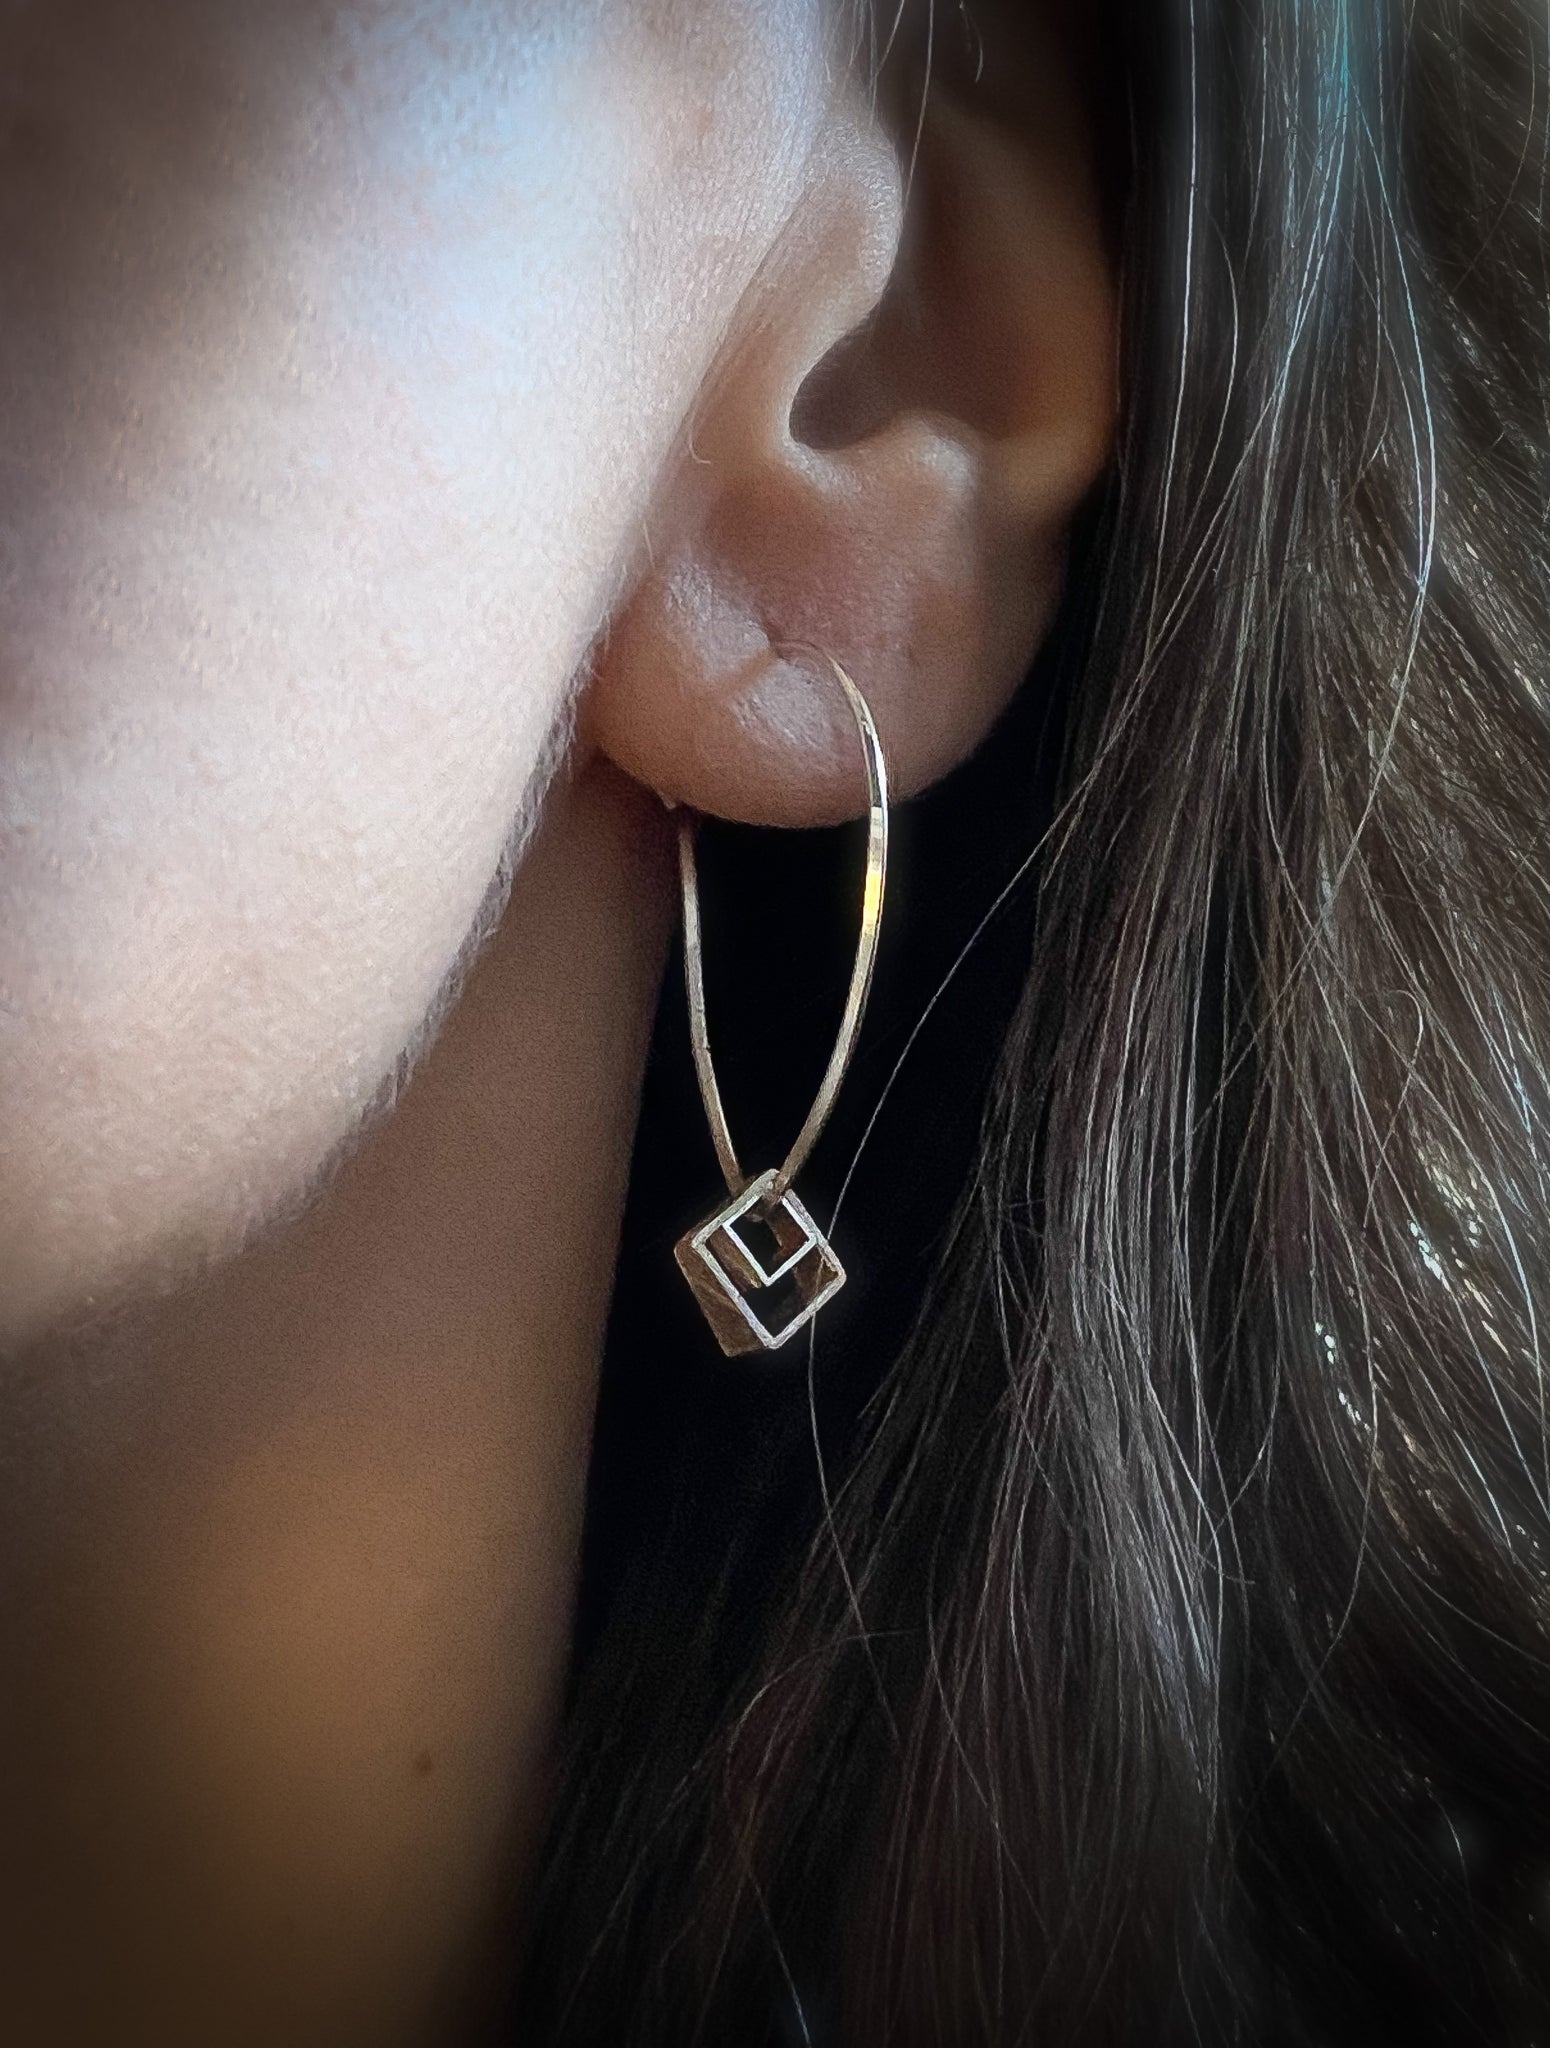 Cube earrings